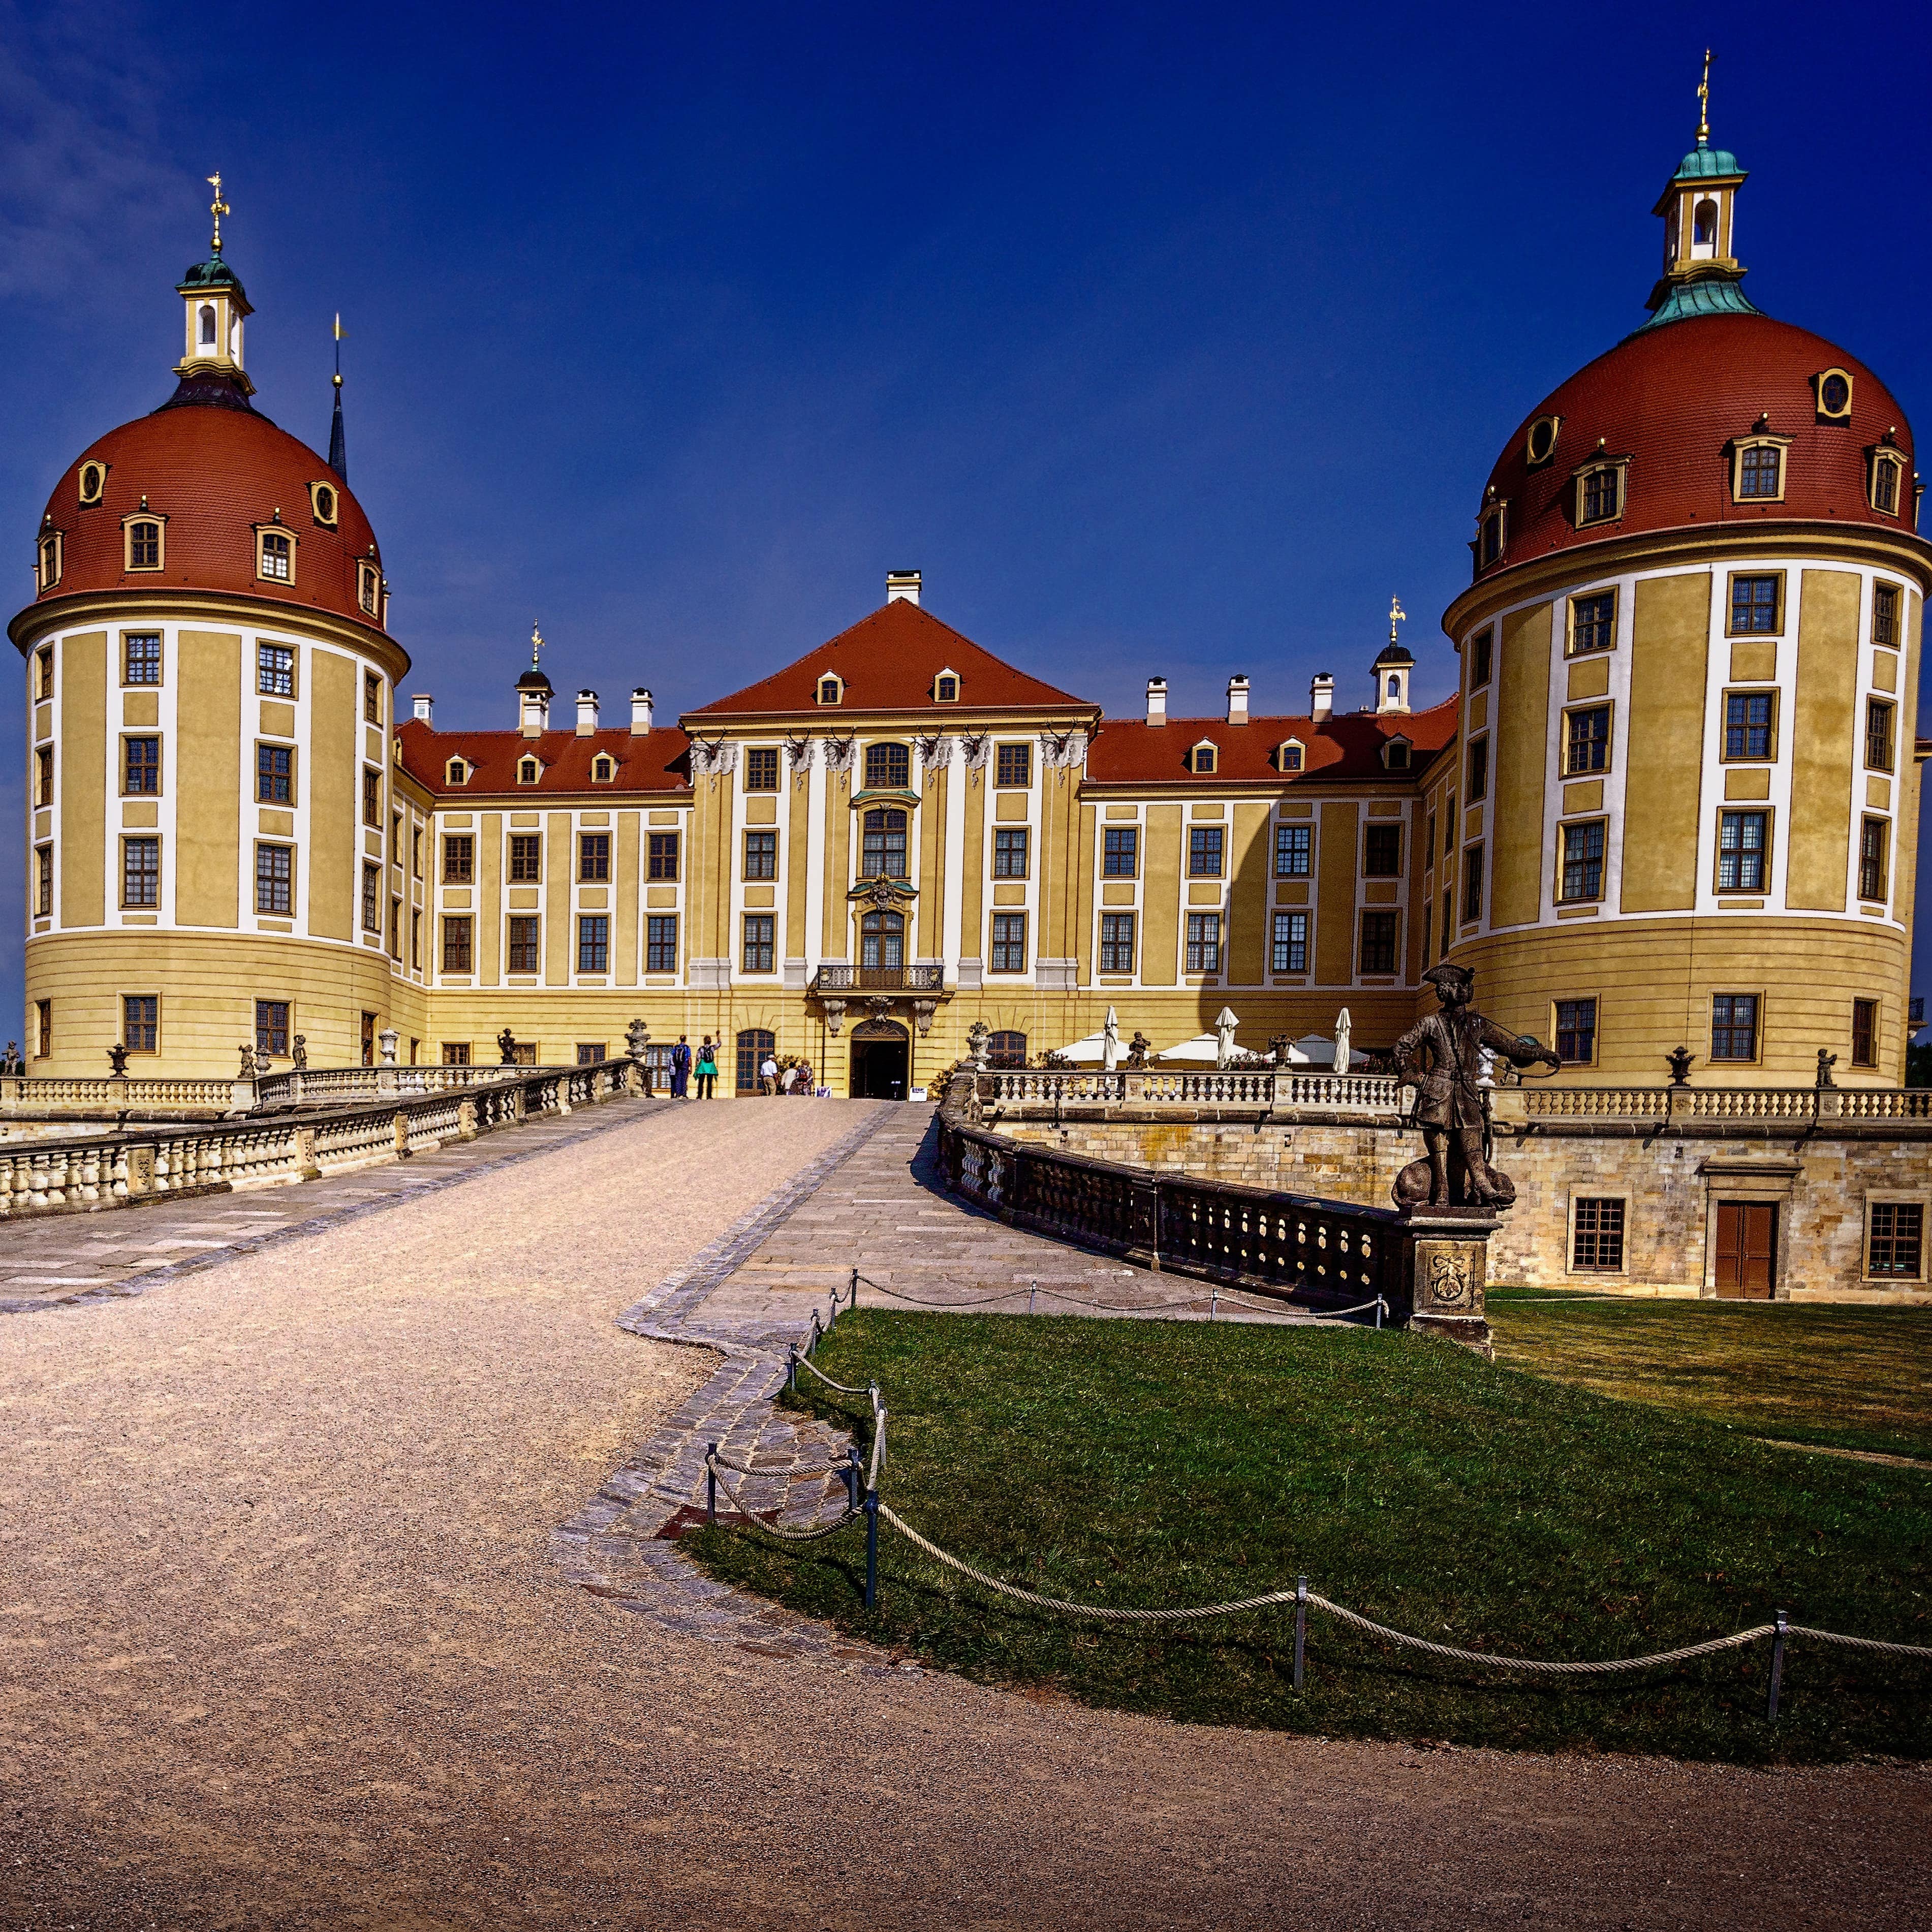 Das Schloss Moritzburg